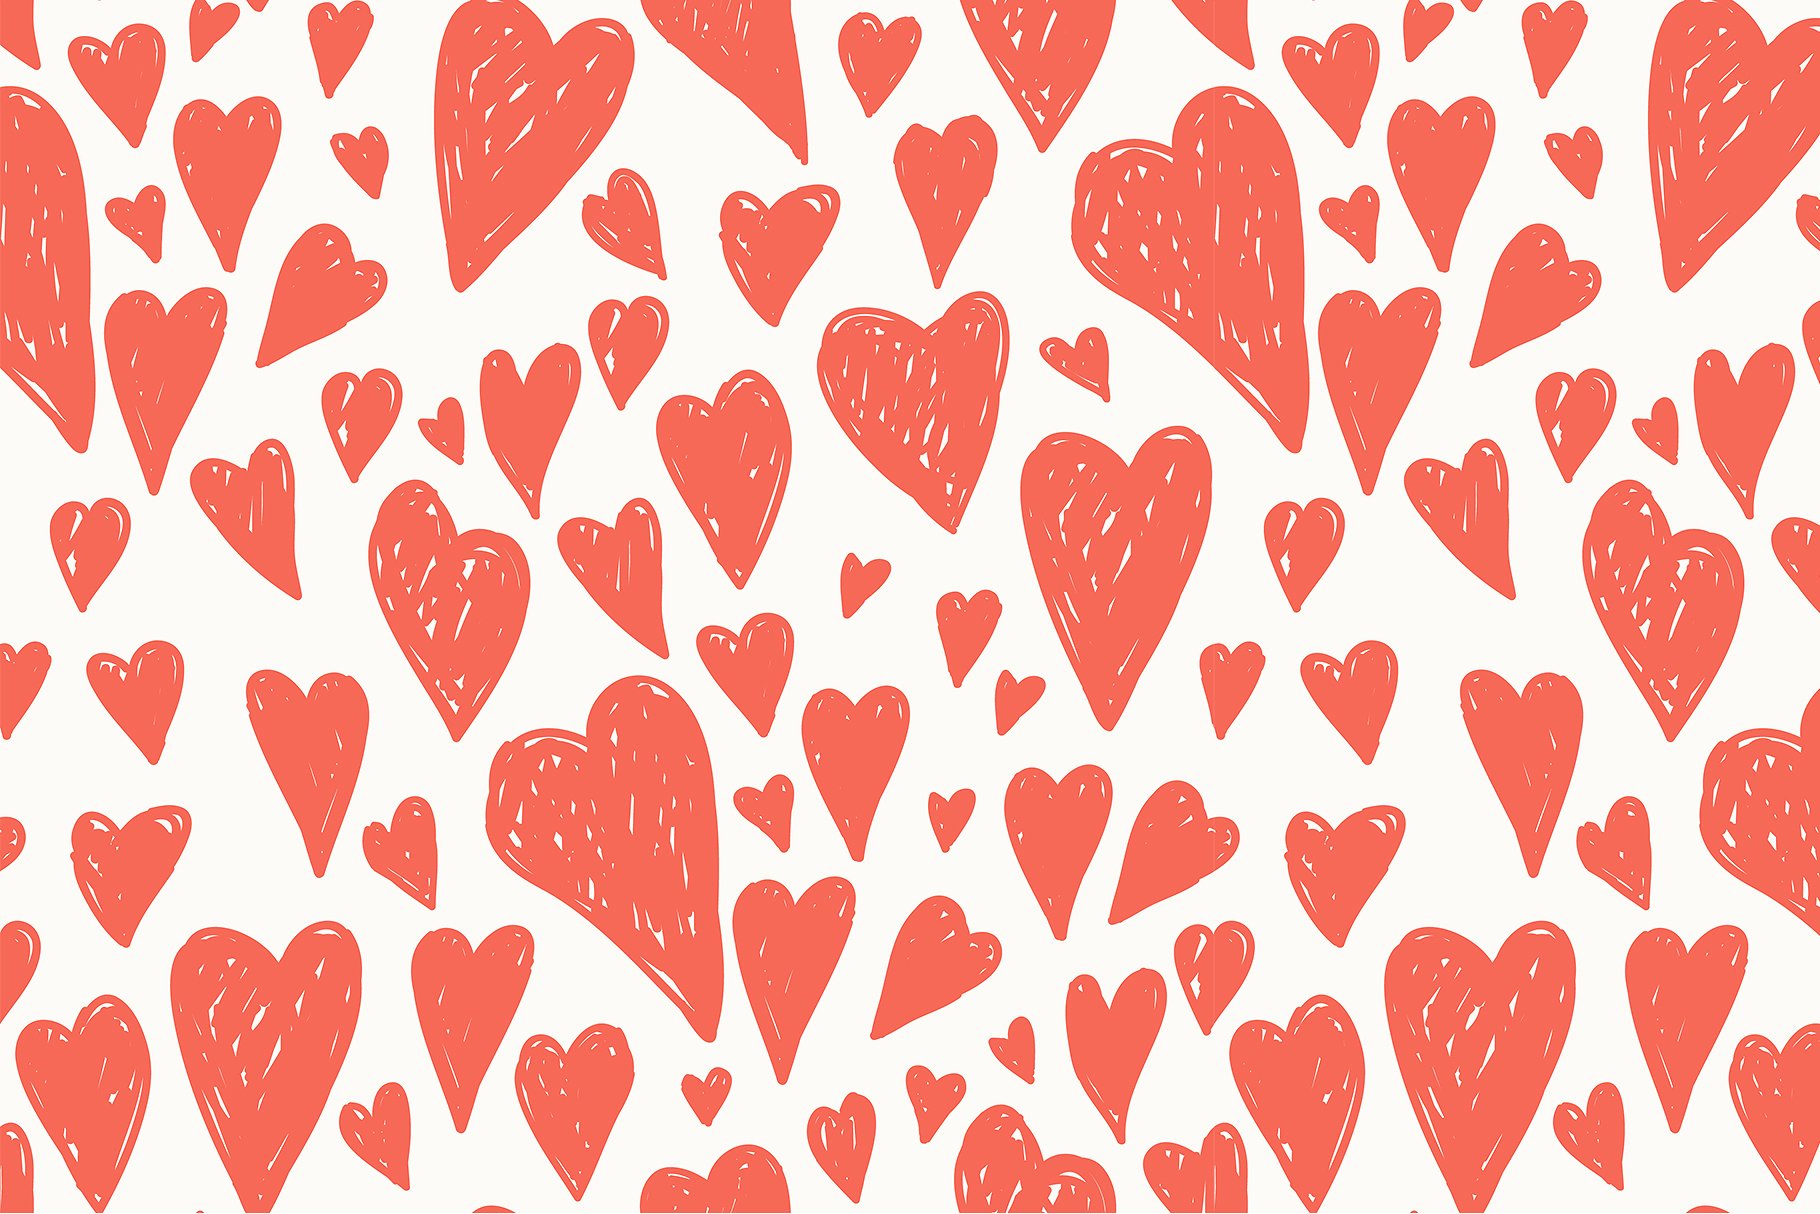 心形无缝纹理集 Hearts Seamless Patterns Set插图(7)